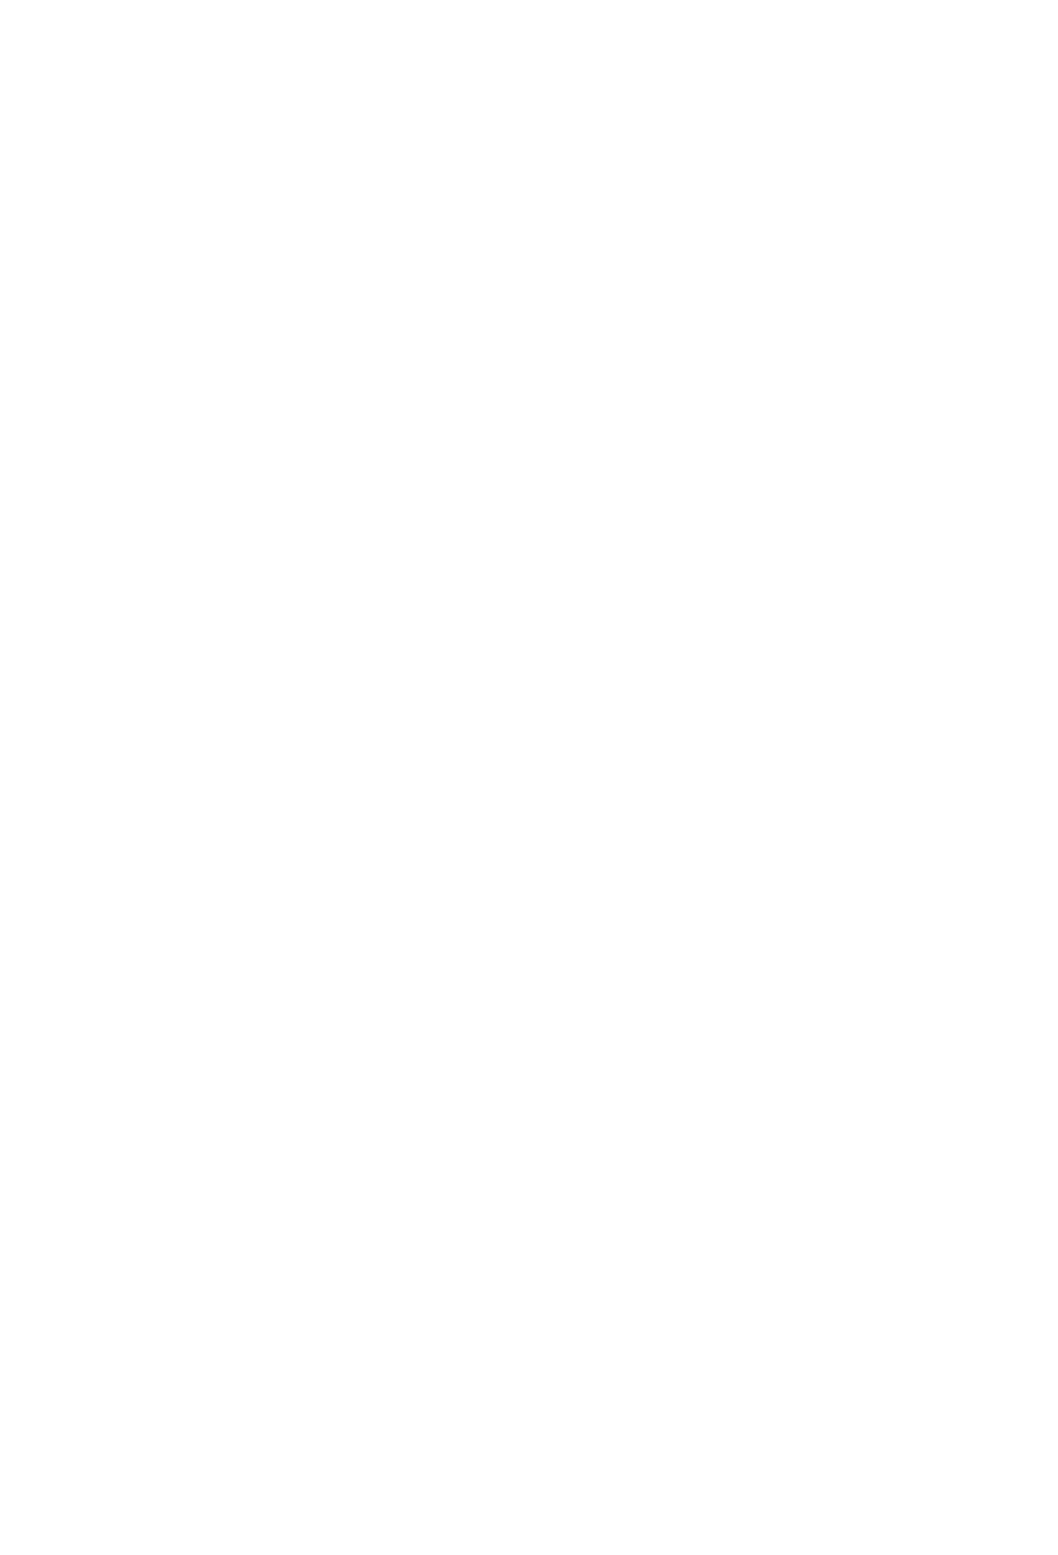 POINT Biopharma logo for dark backgrounds (transparent PNG)